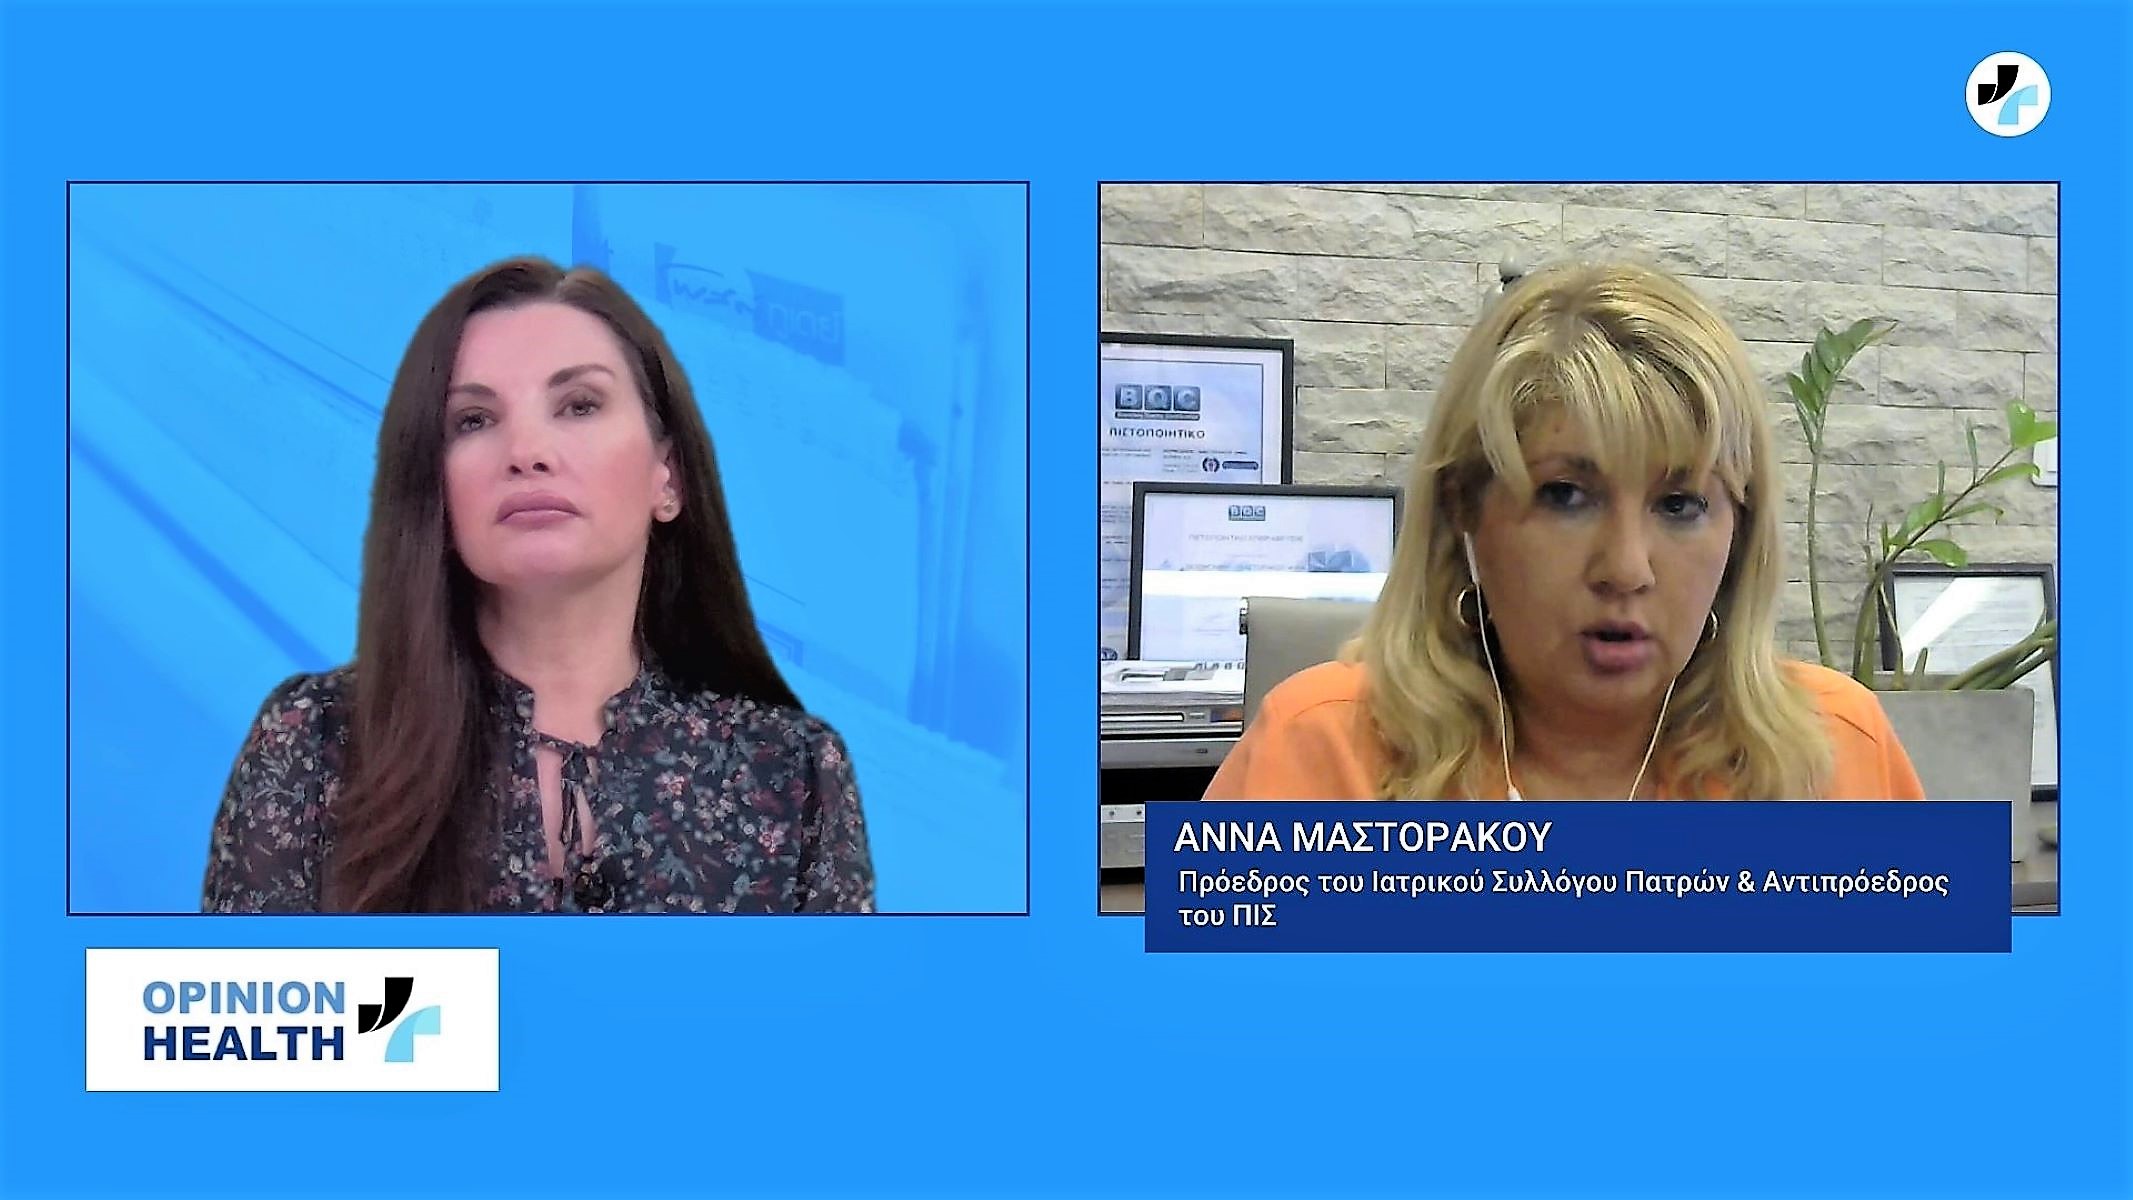 Άννα Μαστοράκου στο healthweb.gr: Προσφύγαμε στον εισαγγελέα για τις ψευδείς ειδήσεις των αντιεμβολιαστών